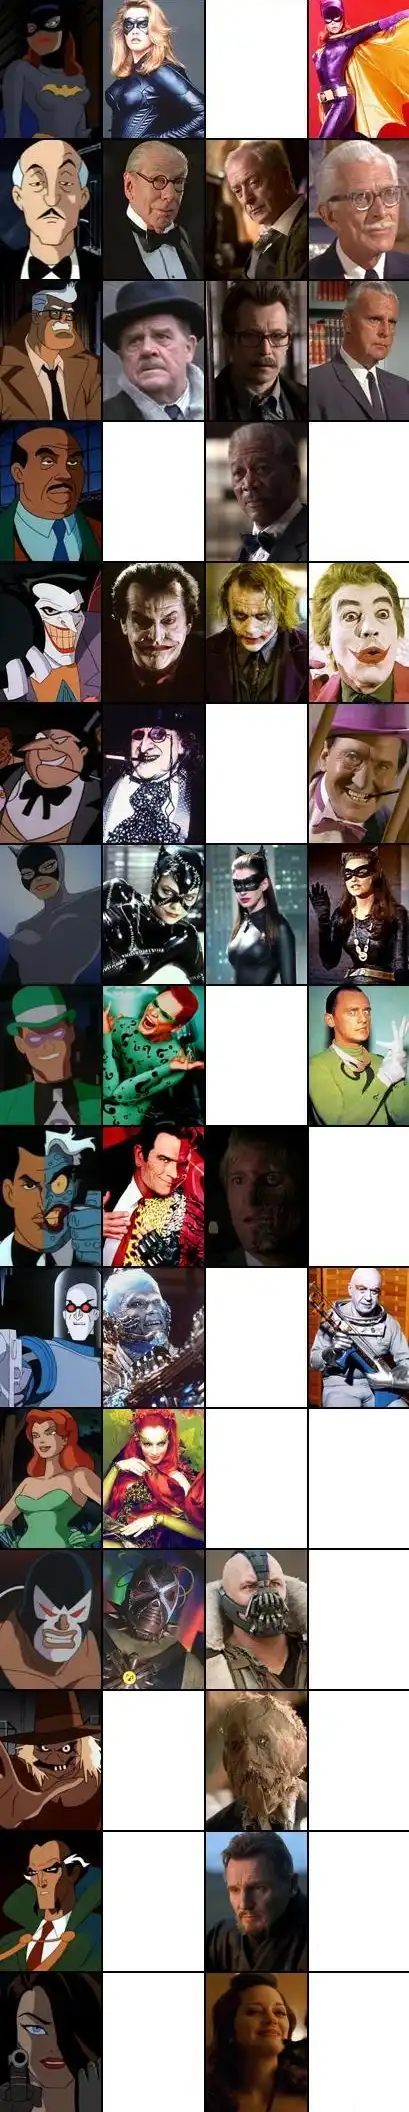 Бэтмен и его друзья в разных инкарнациях